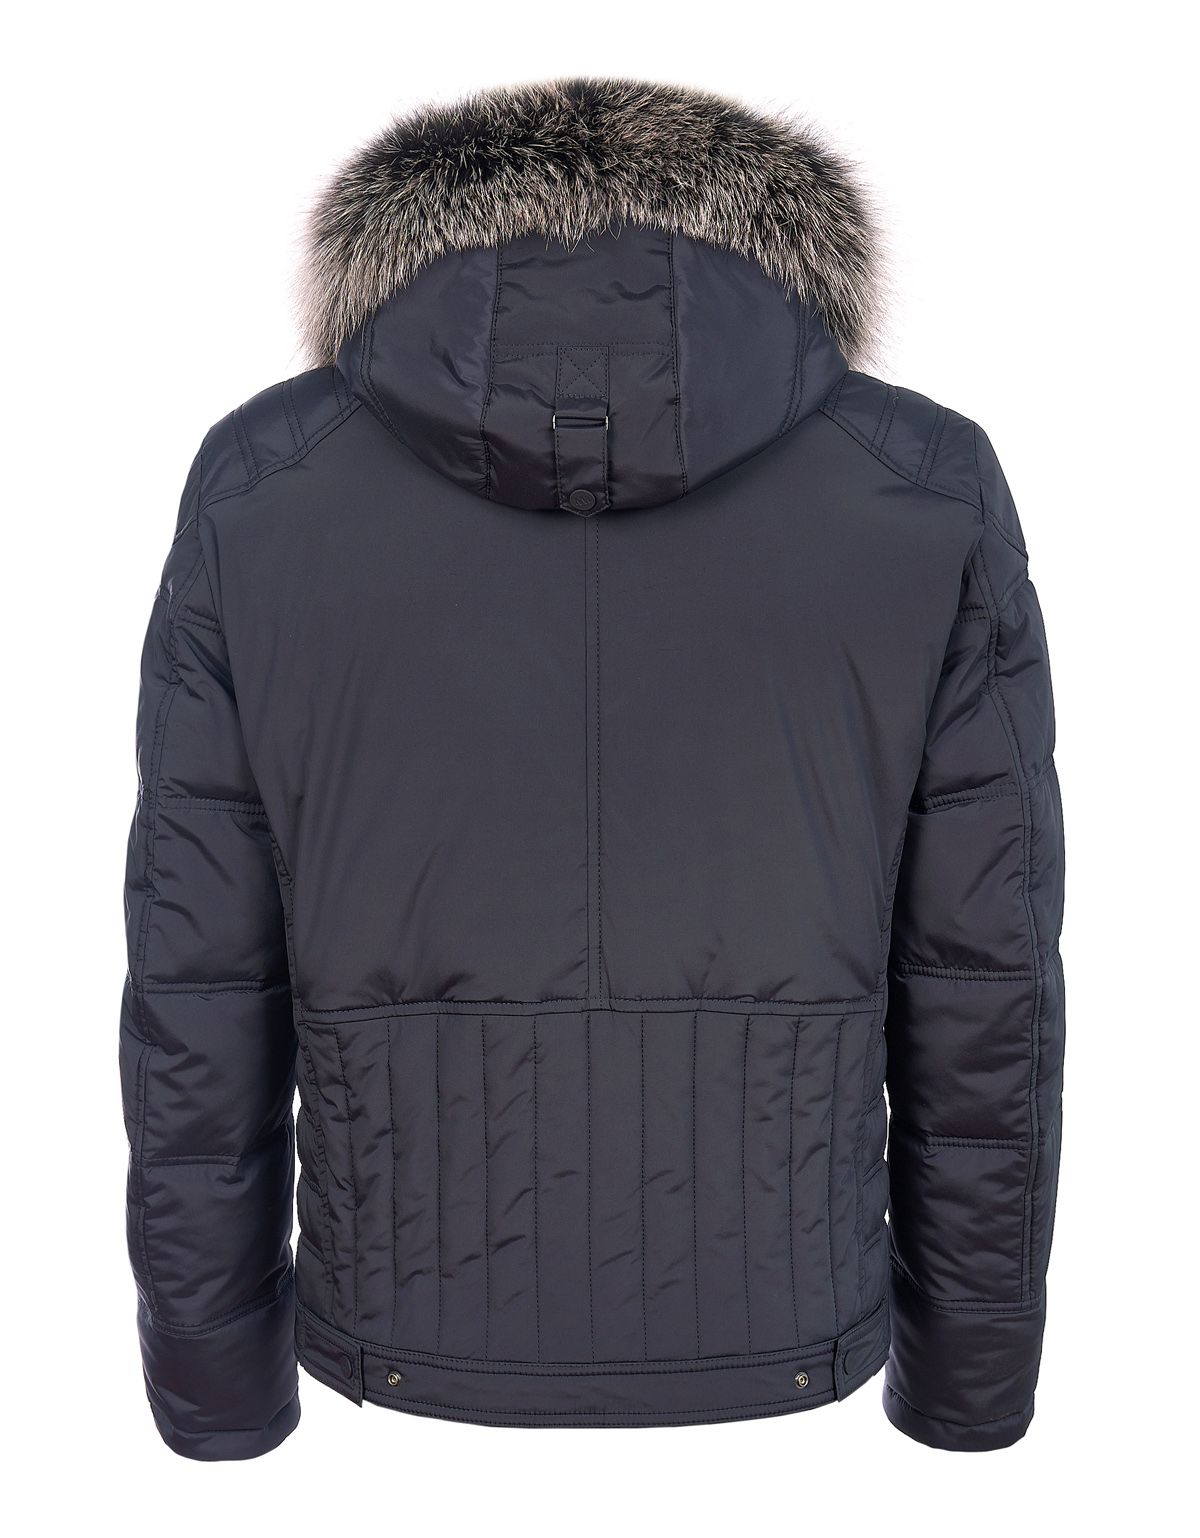 Куртка пуховая мужская короткая MEUCCI с капюшоном | купить в интернет-магазине Olymp-Men